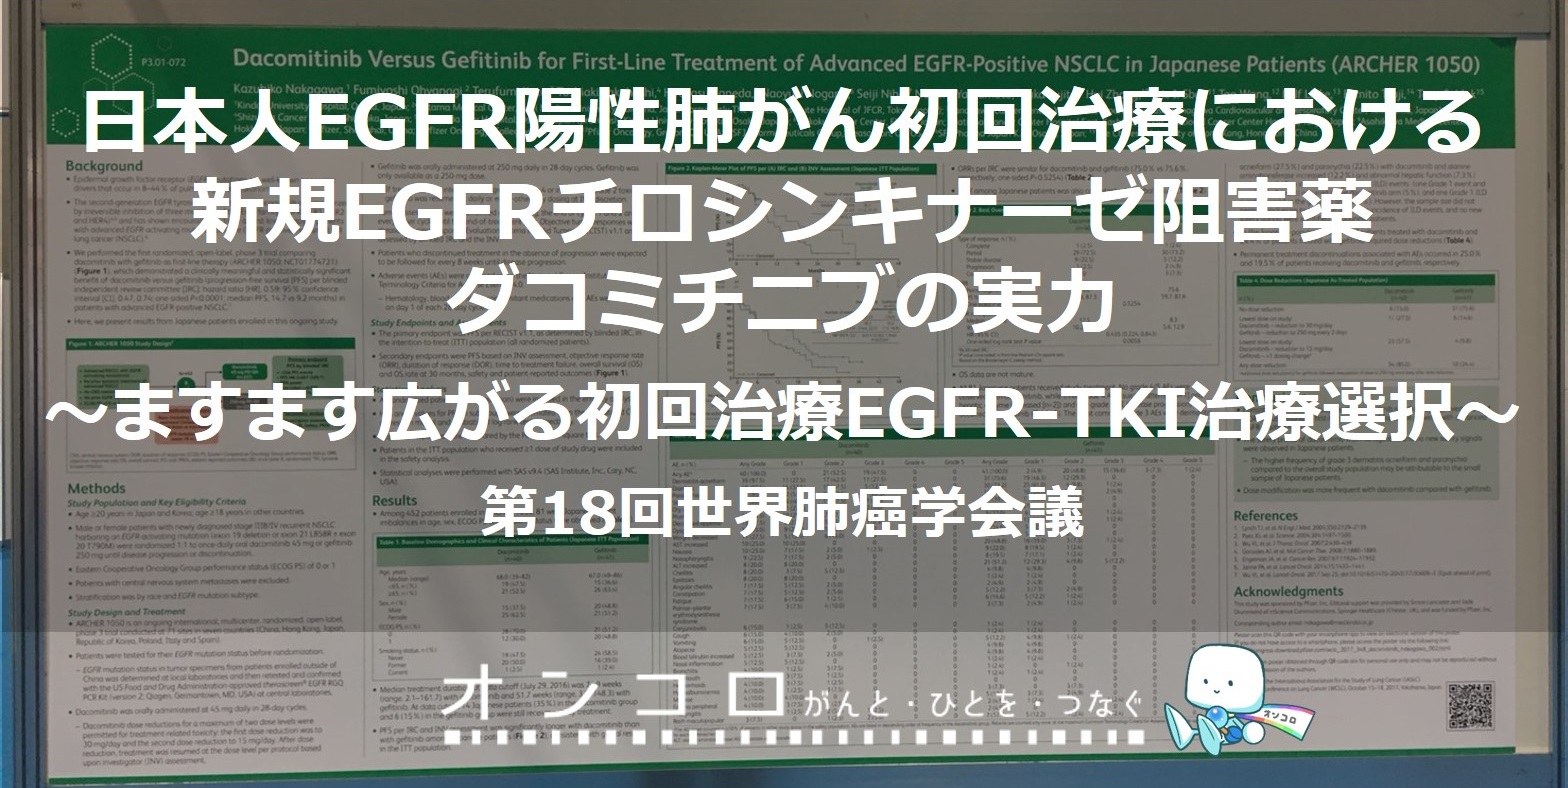 日本人EGFR陽性肺がん初回治療における新規EGFRチロシンキナーゼ阻害薬ダコミチニブの実力ますます広がる初回治療EGFR-TKI治療選択 WCLC2017